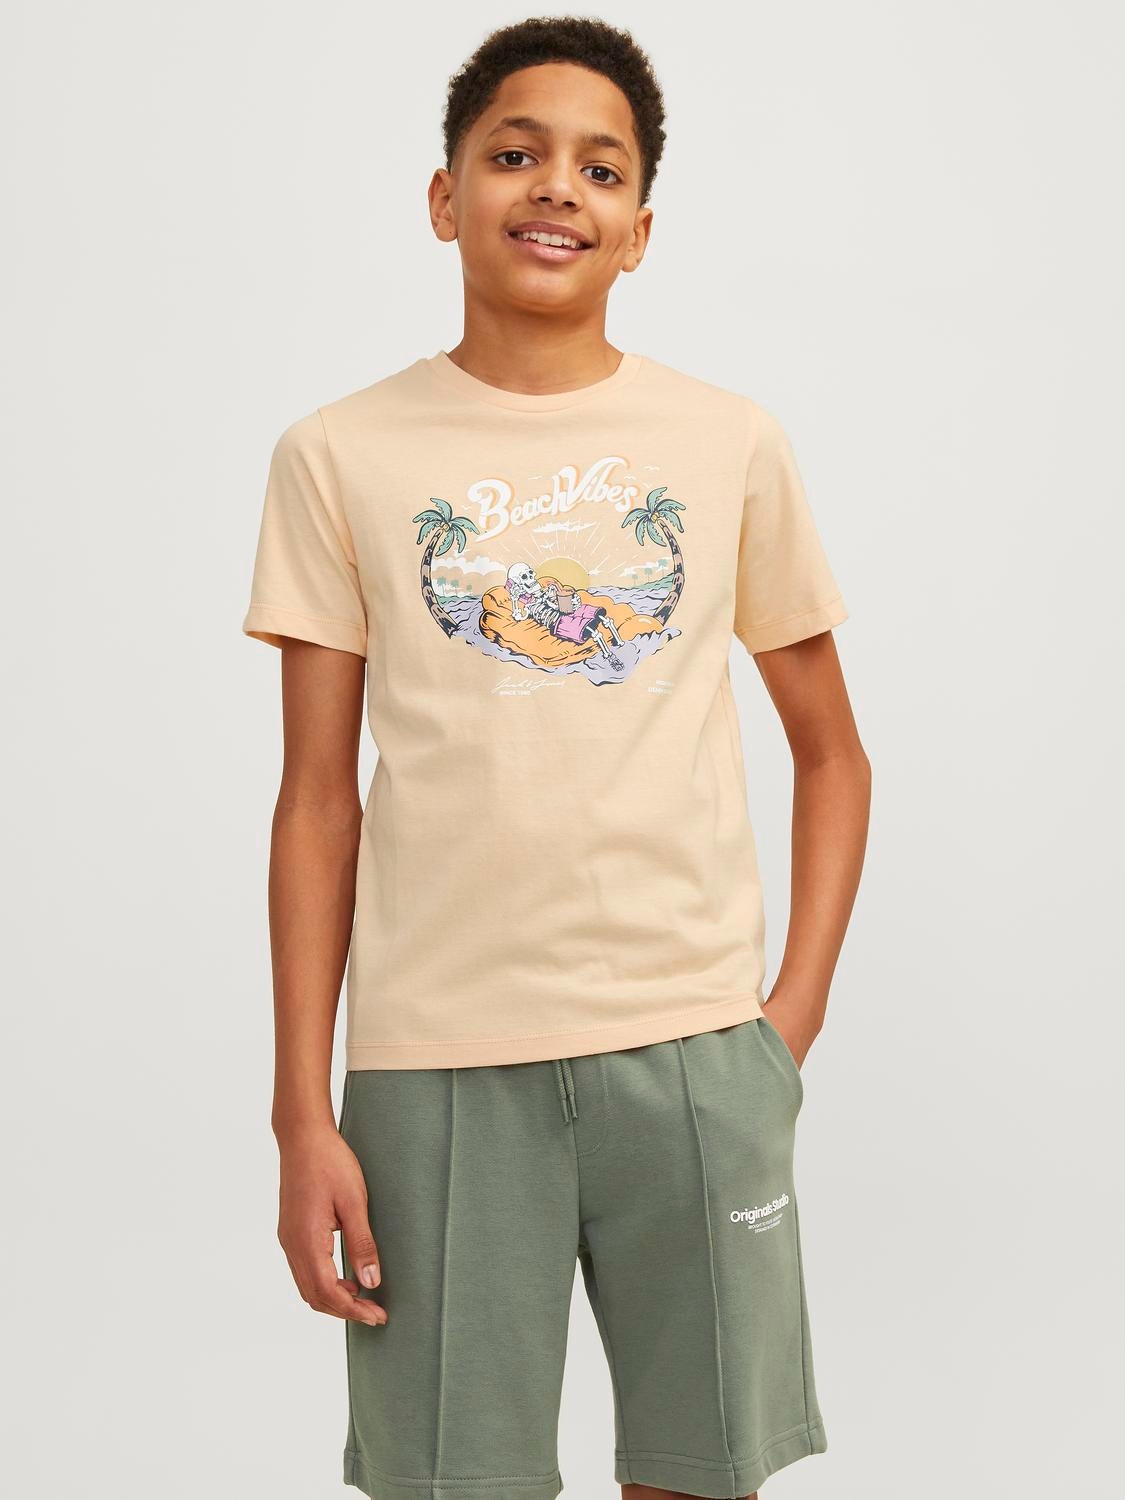 Jack & Jones Tryck T-shirt För pojkar -Apricot Ice  - 12249732